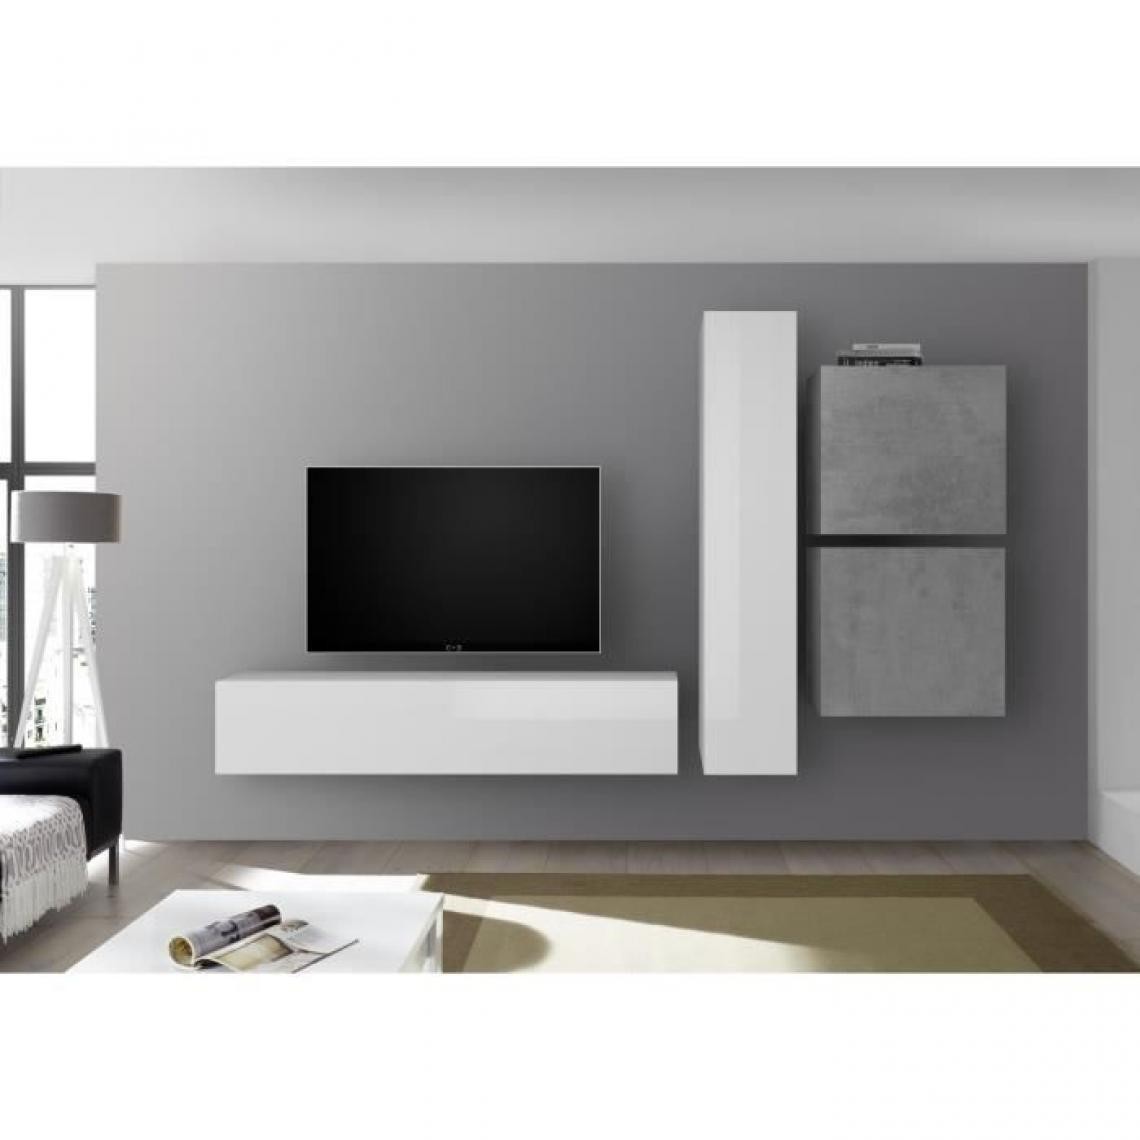 Cstore - Meuble TV Mural - Ciment et Blanc Laqué - L 260 x P 30 x H 180 cm - CESENA - Meubles TV, Hi-Fi